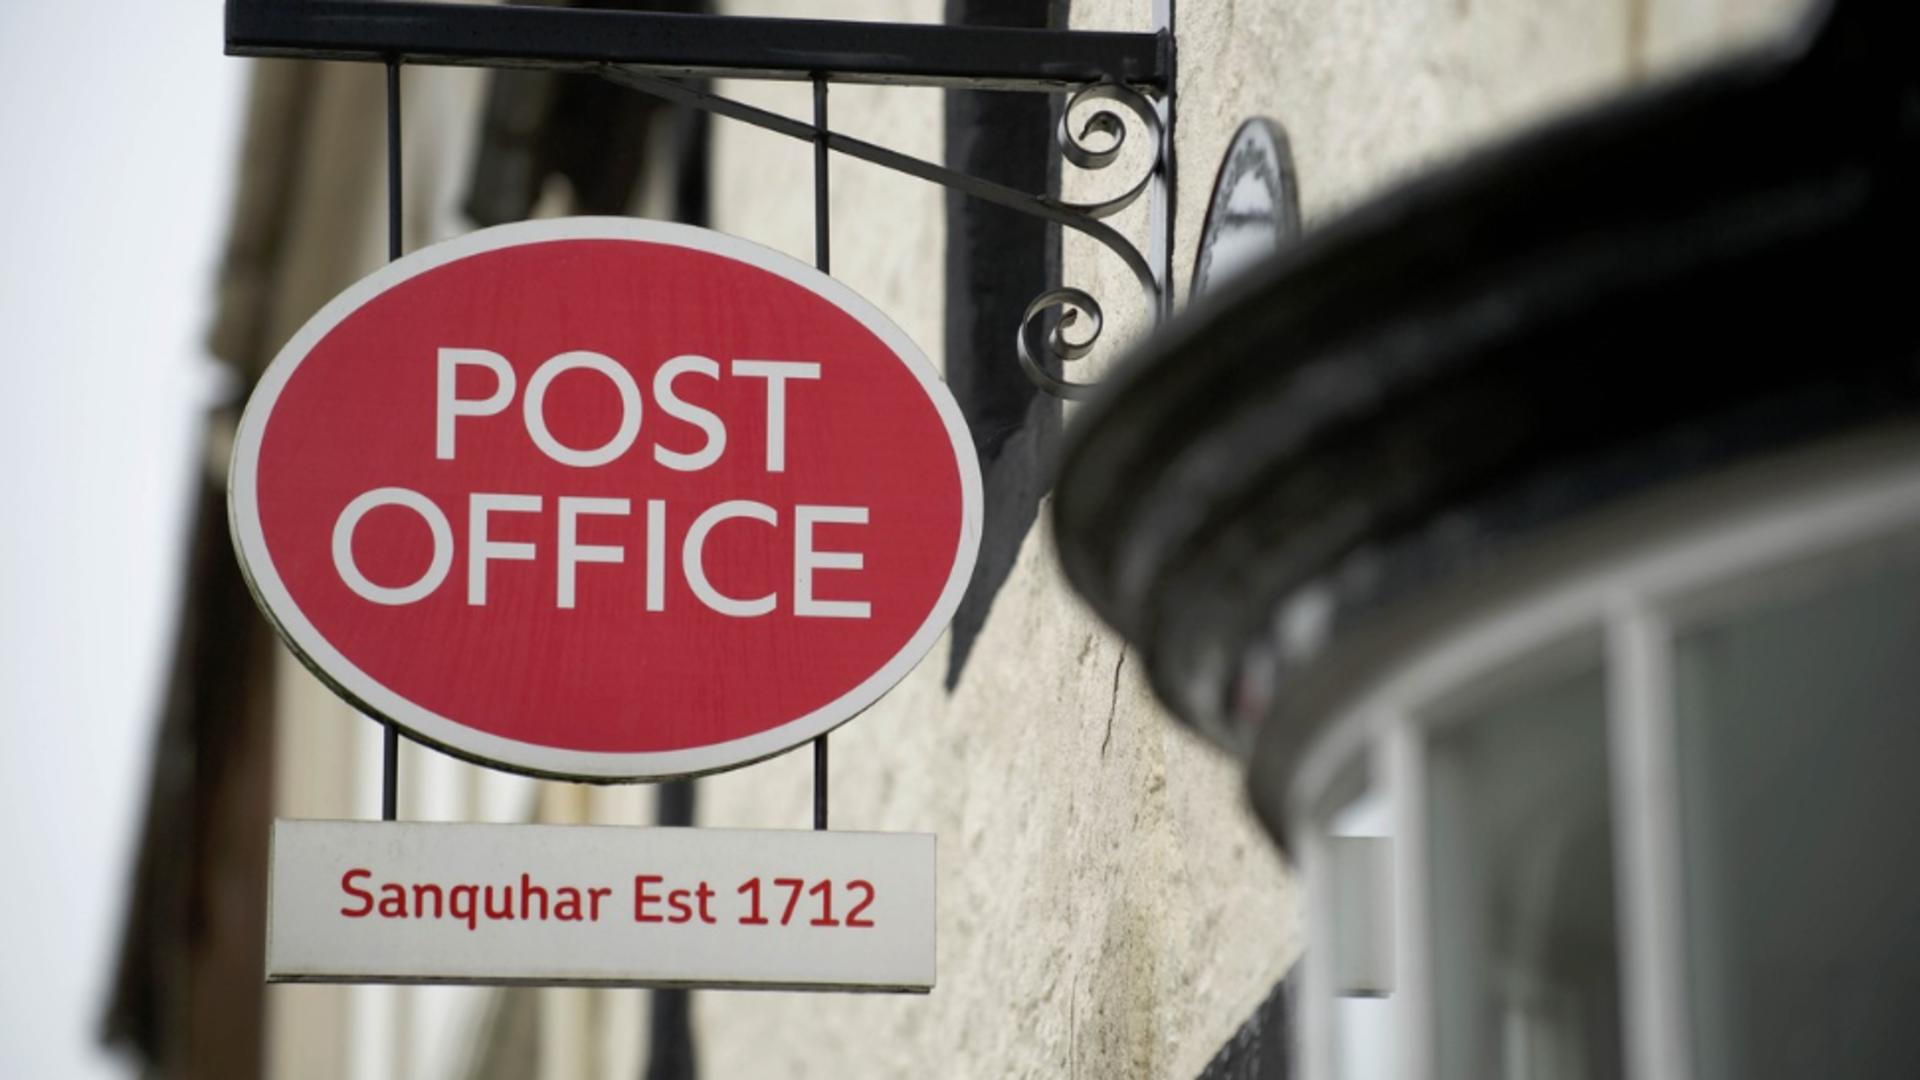 Poşta Britanică, anchetată pentru că a acuzat peste 700 de angajaţi de furt/ Foto: Profimedia